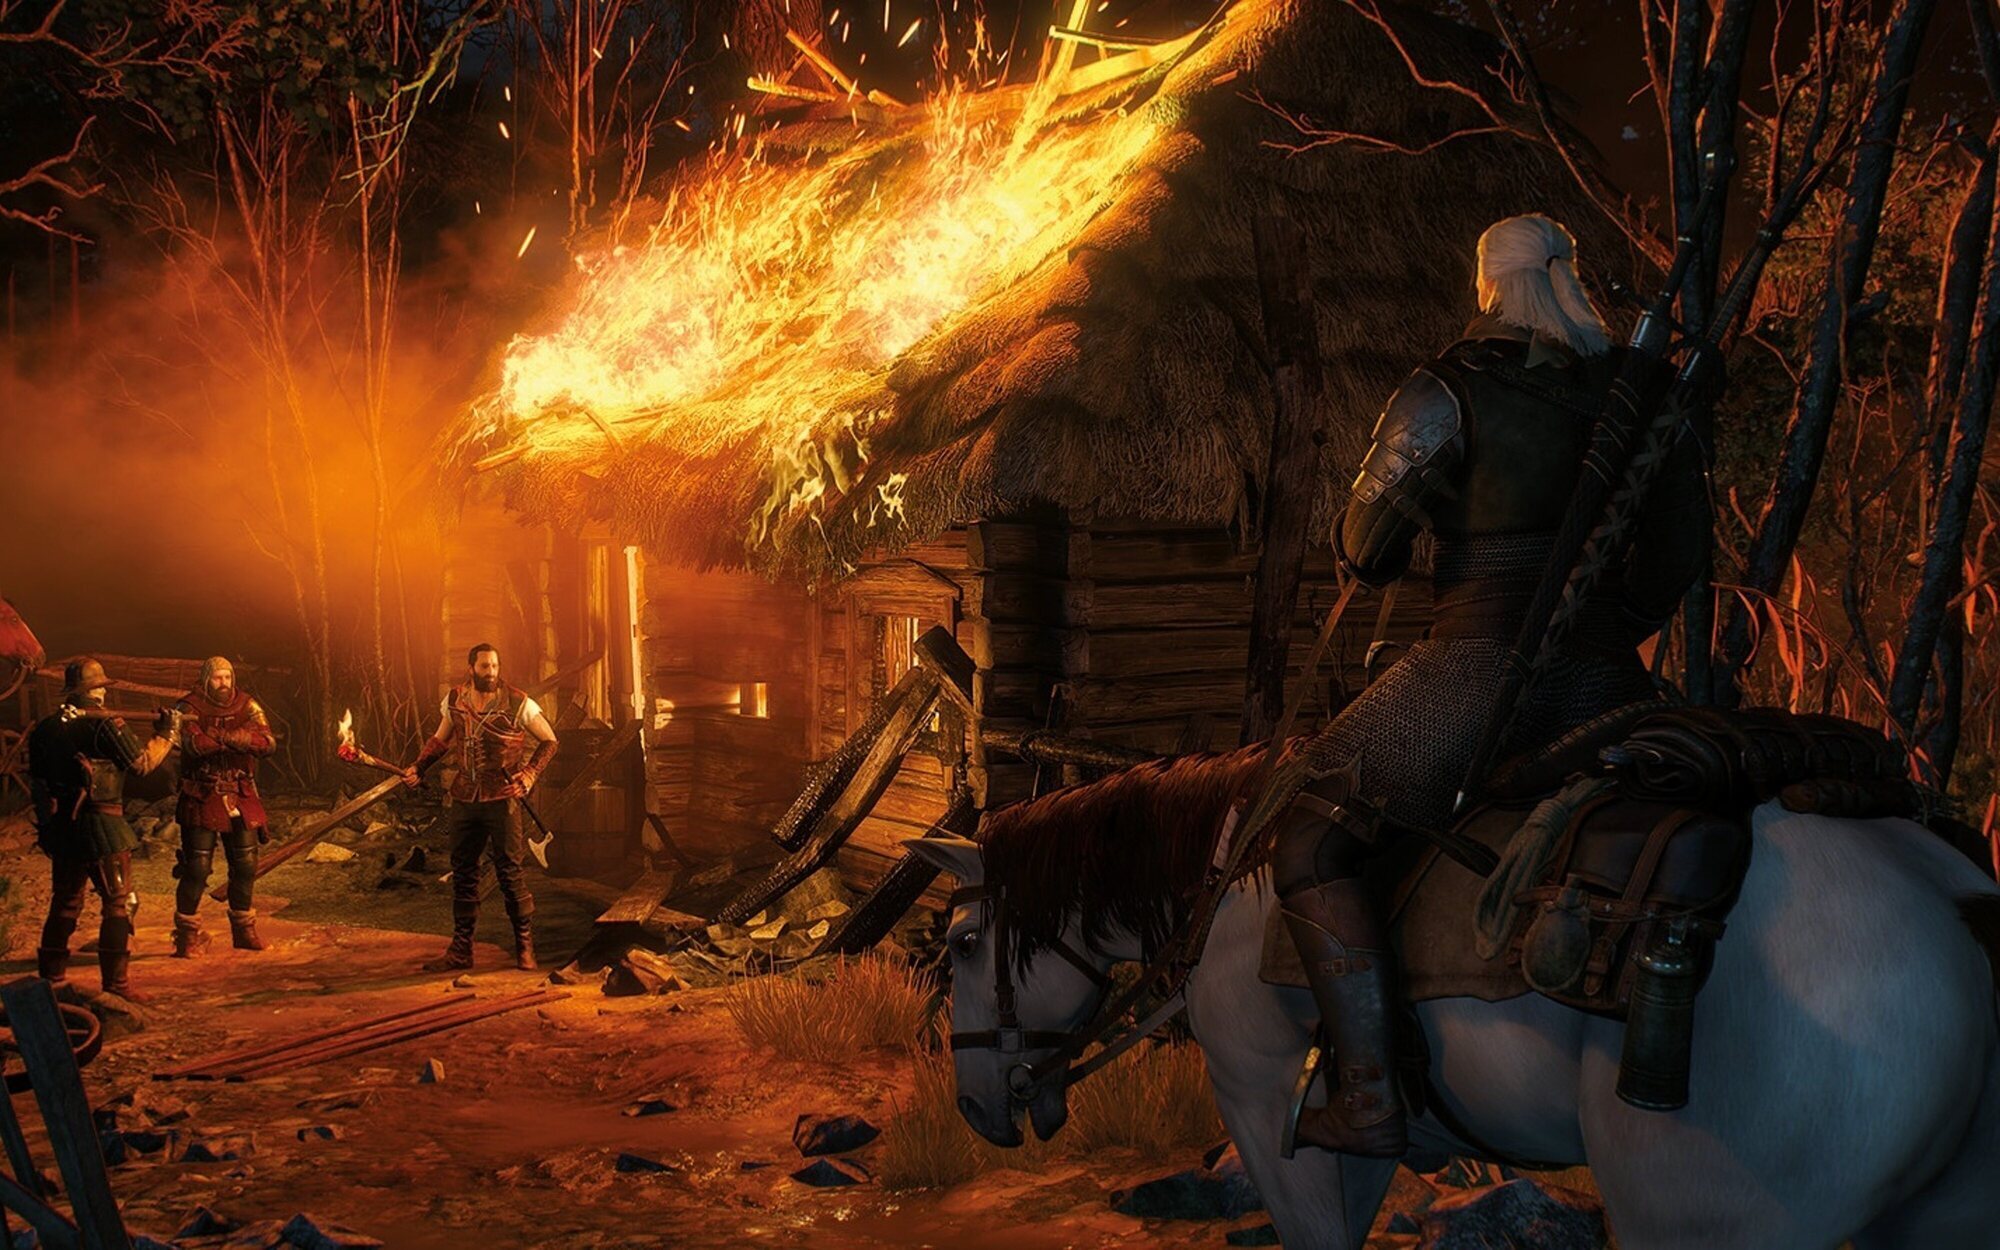 'The Witcher 3' ya ha vendido más de 50 millones de copias y la saga completa más de 75